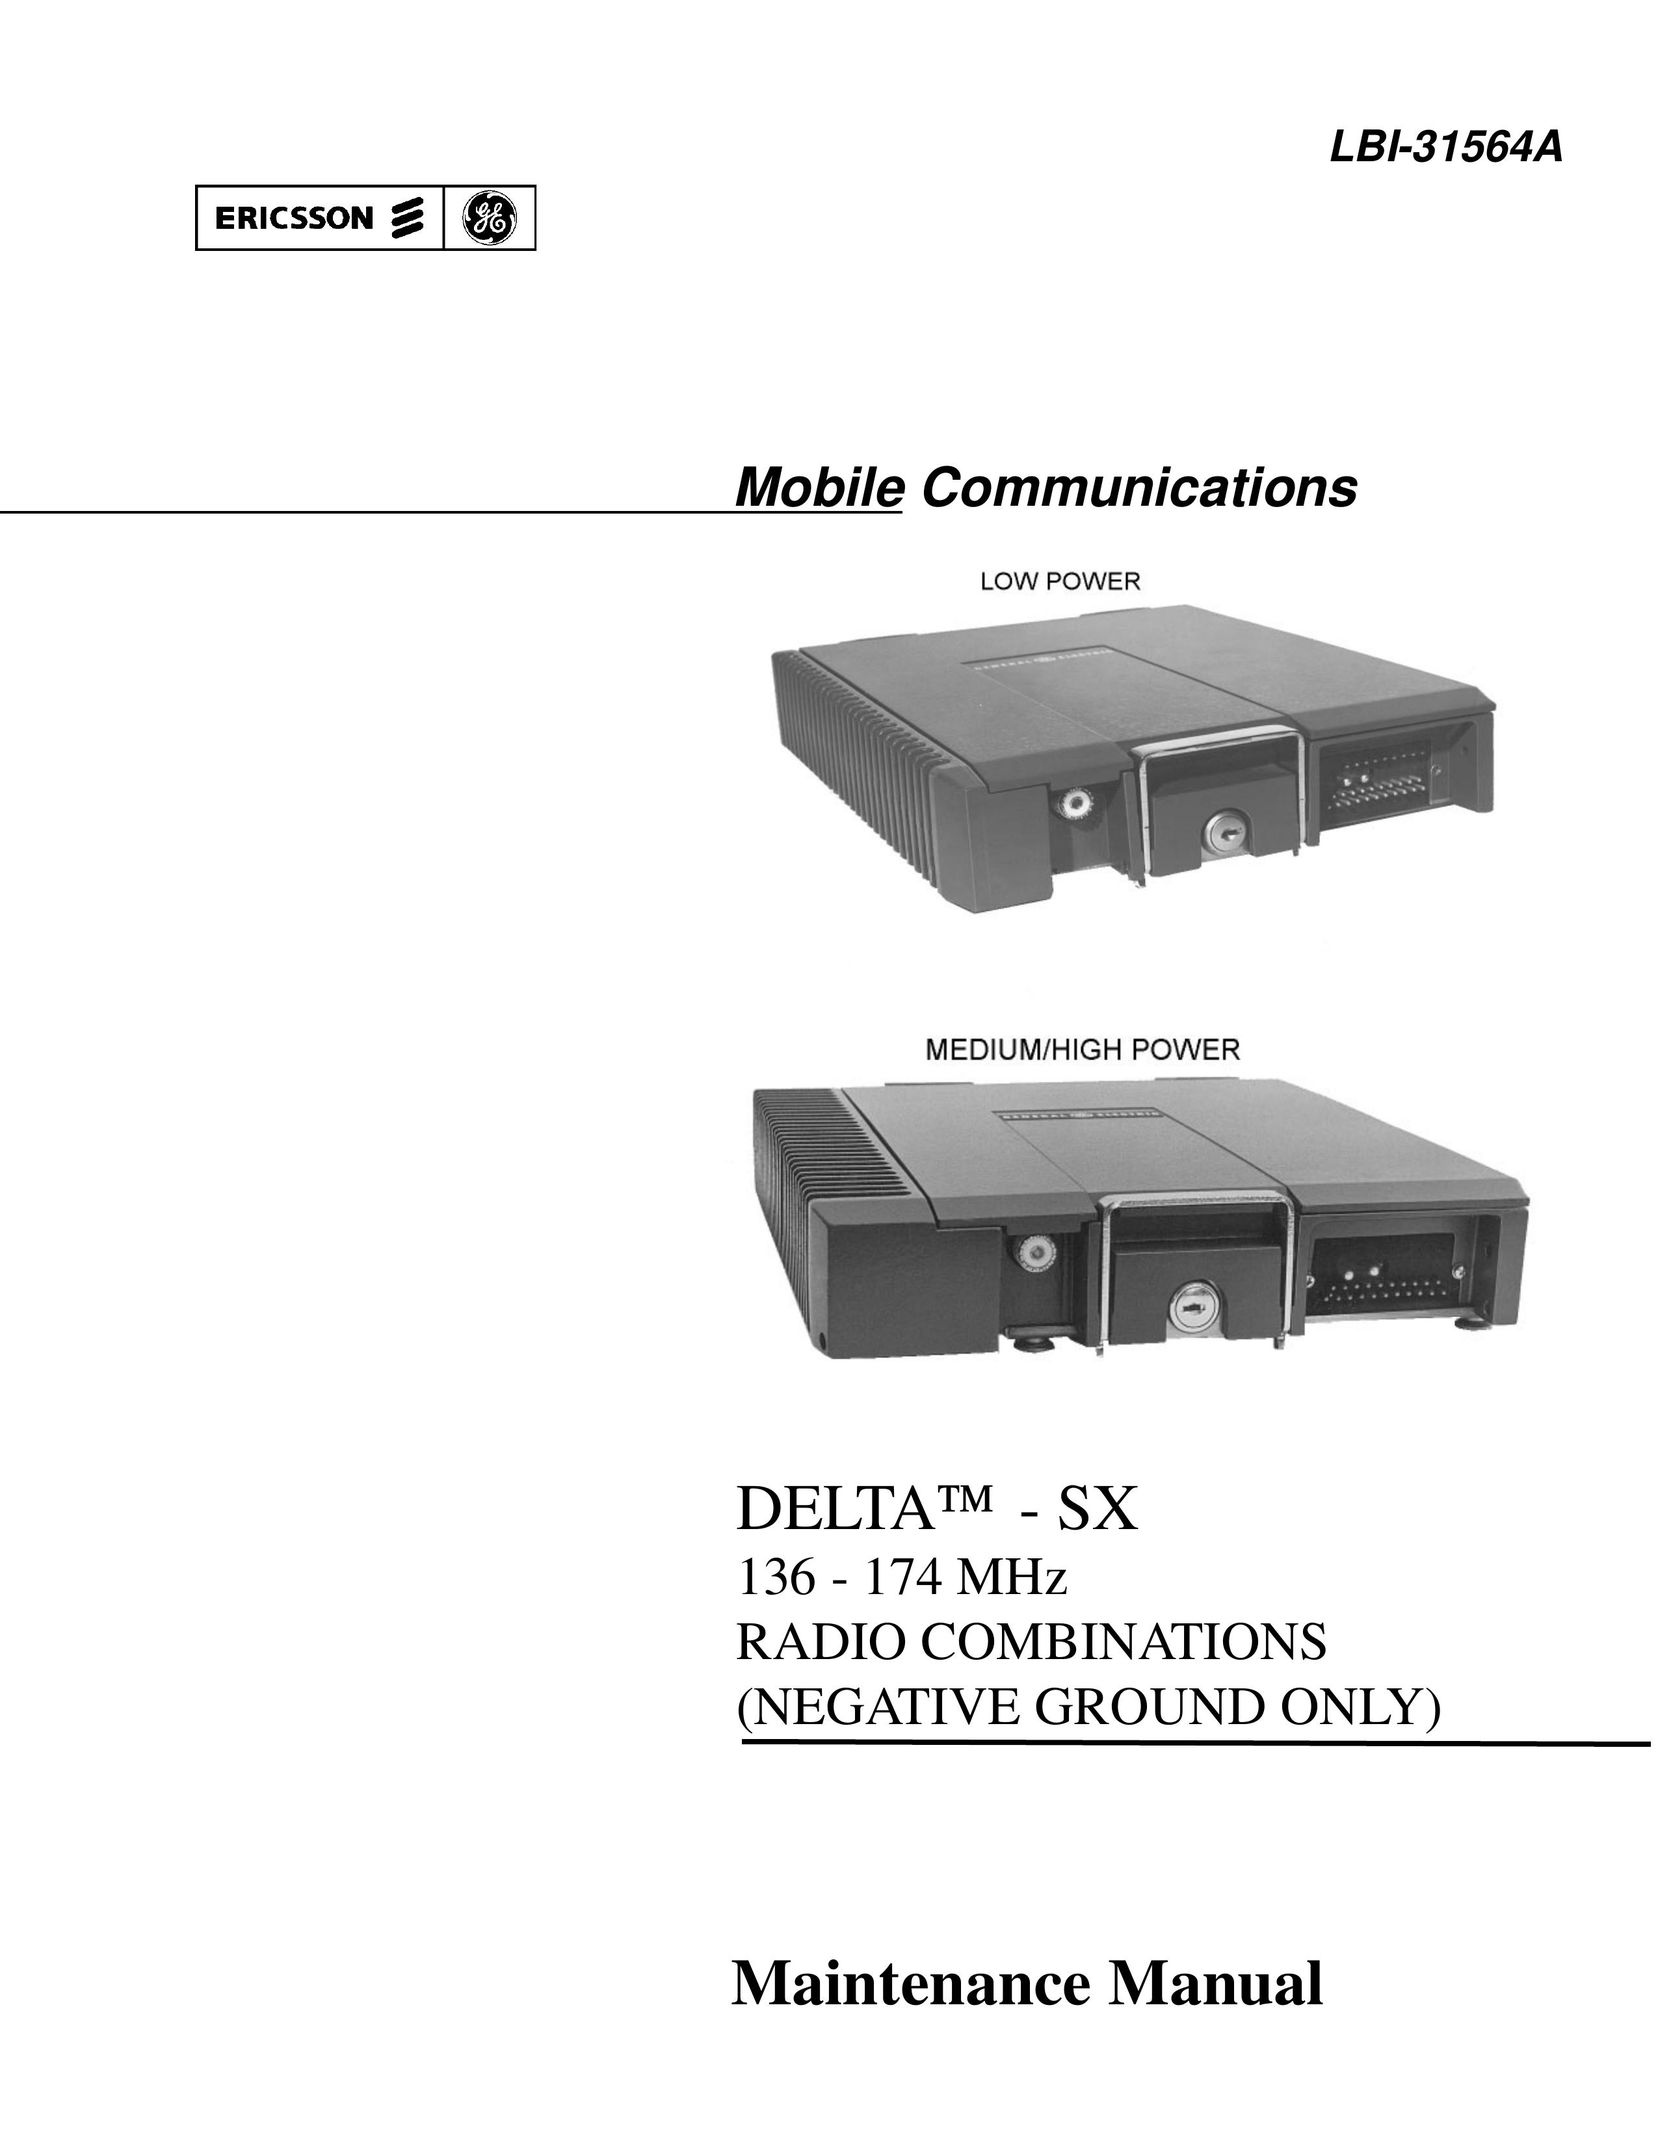 GE LBI-31564A Two-Way Radio User Manual